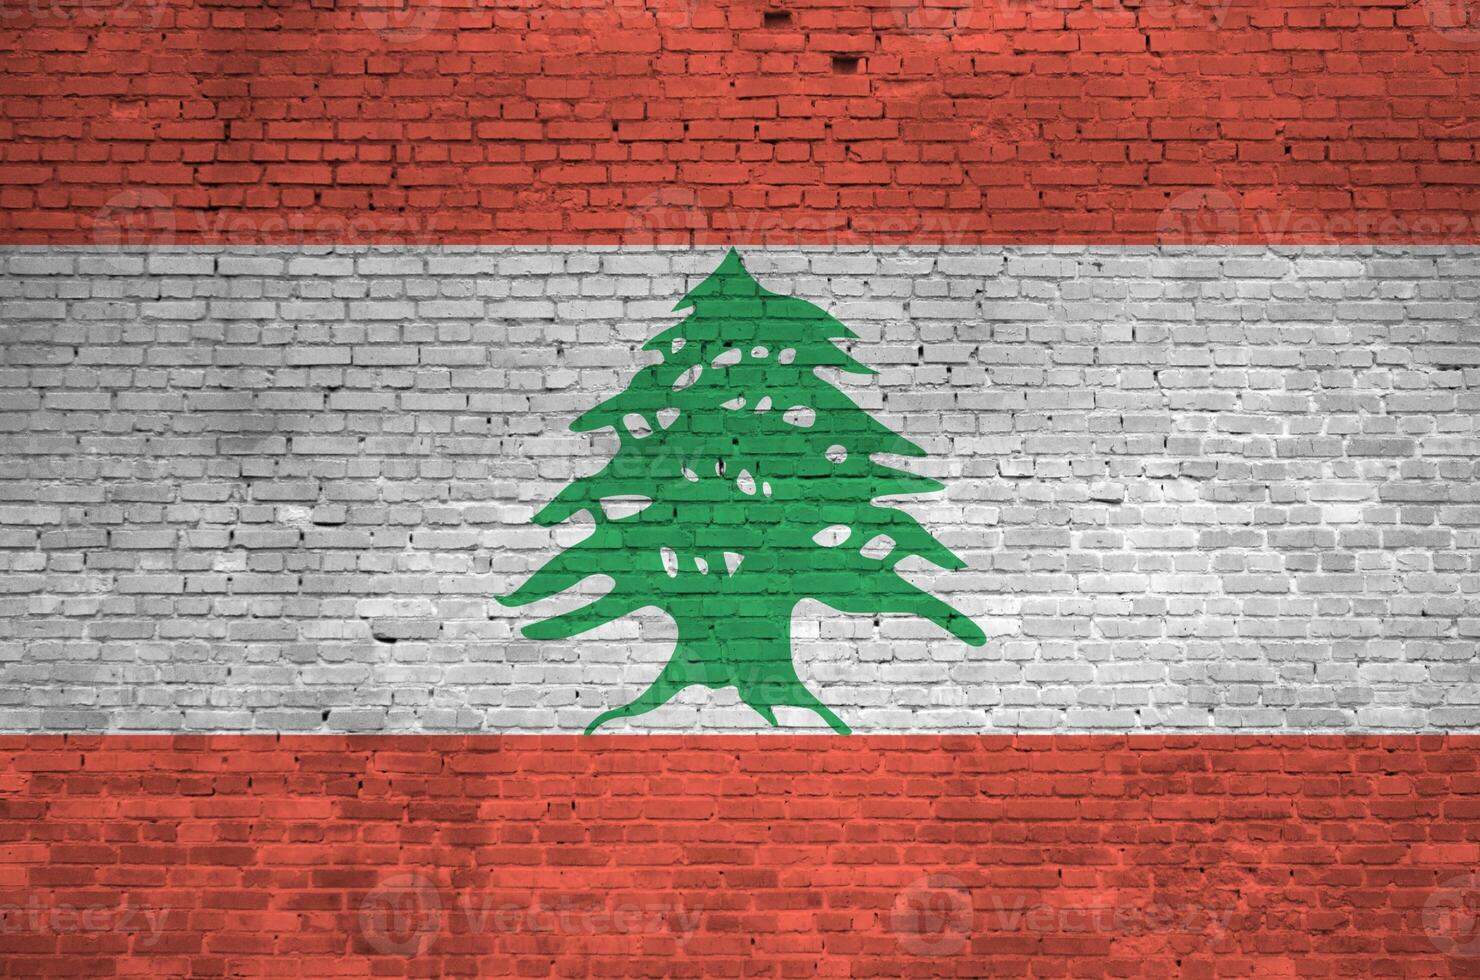 libanon flagga avbildad i måla färger på gammal tegel vägg. texturerad baner på stor tegel vägg murverk bakgrund foto